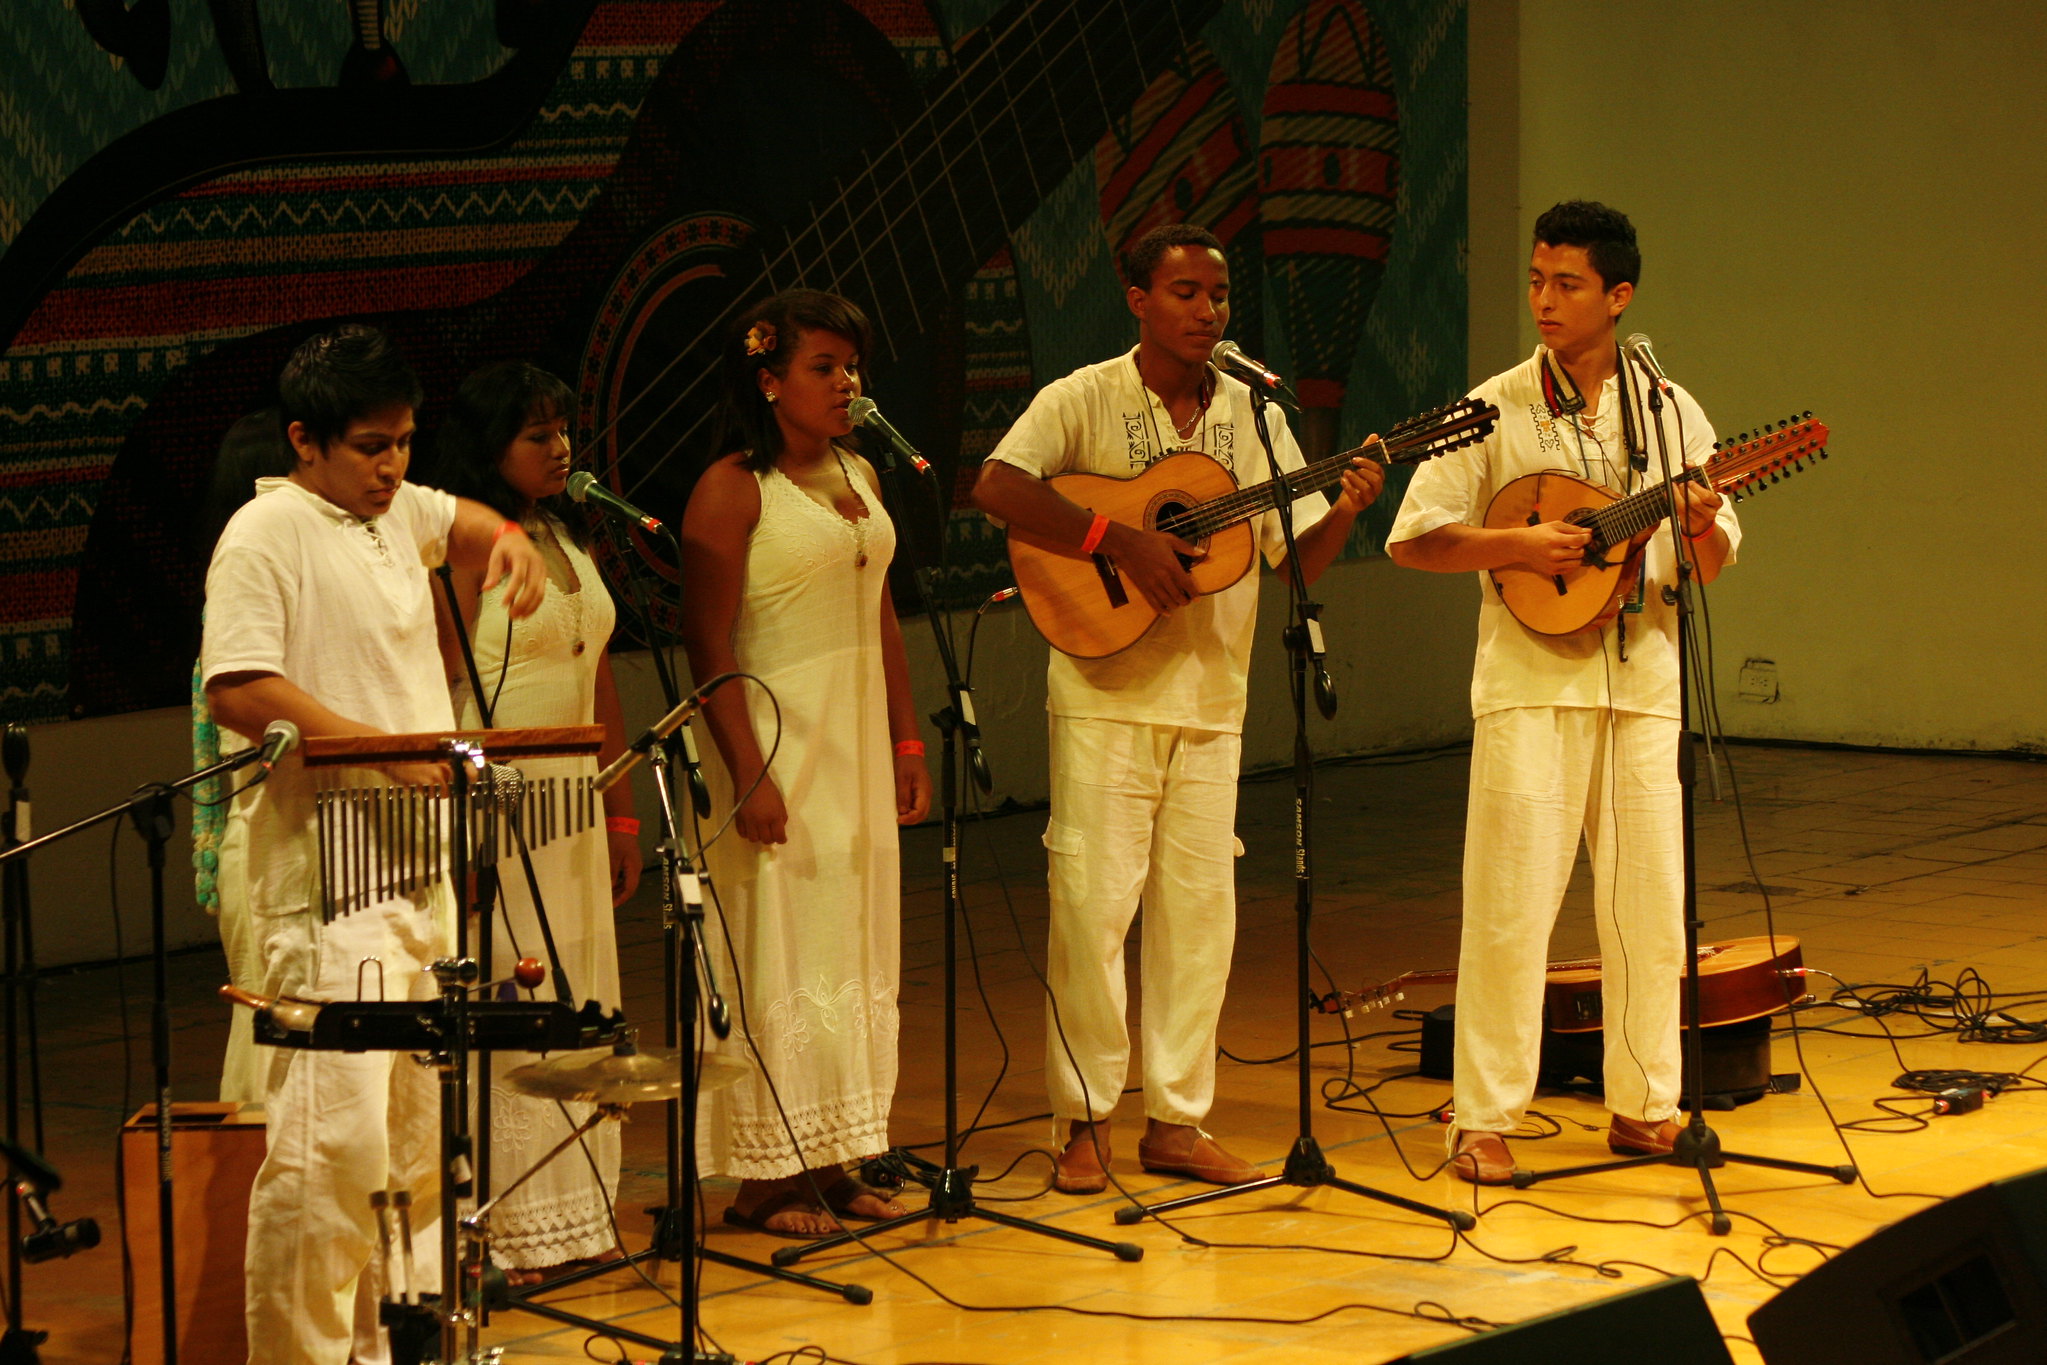 Festival Mono Núñez